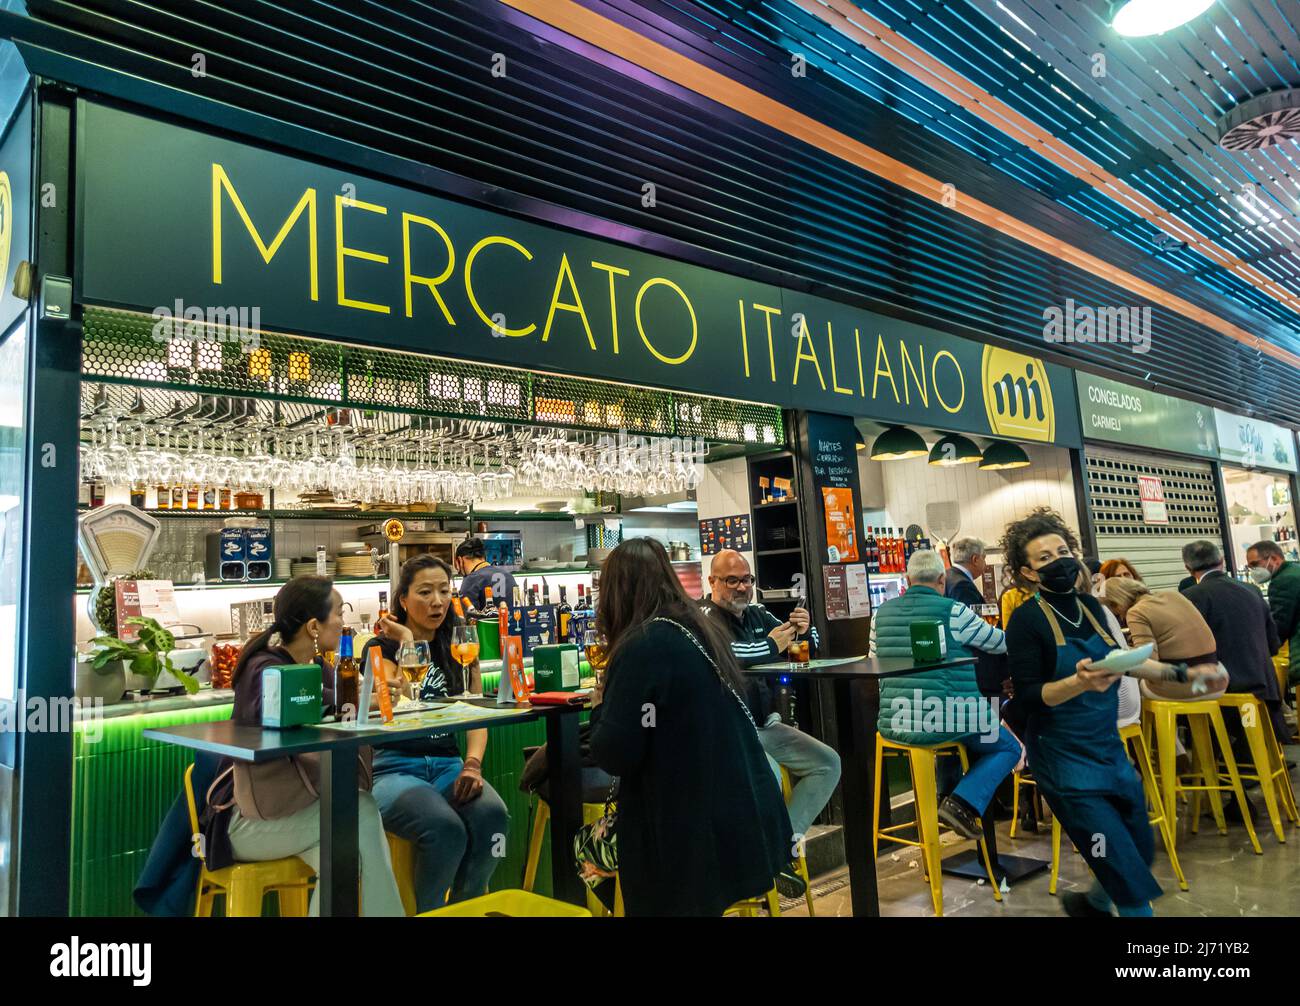 Mercato Italiano - Italienischer Marktplatz innerhalb des spanischen Marktes - Mercado de San Agustín. Kellner mit Gesichtsmasken serviert Gästen Essen und Trinken Stockfoto